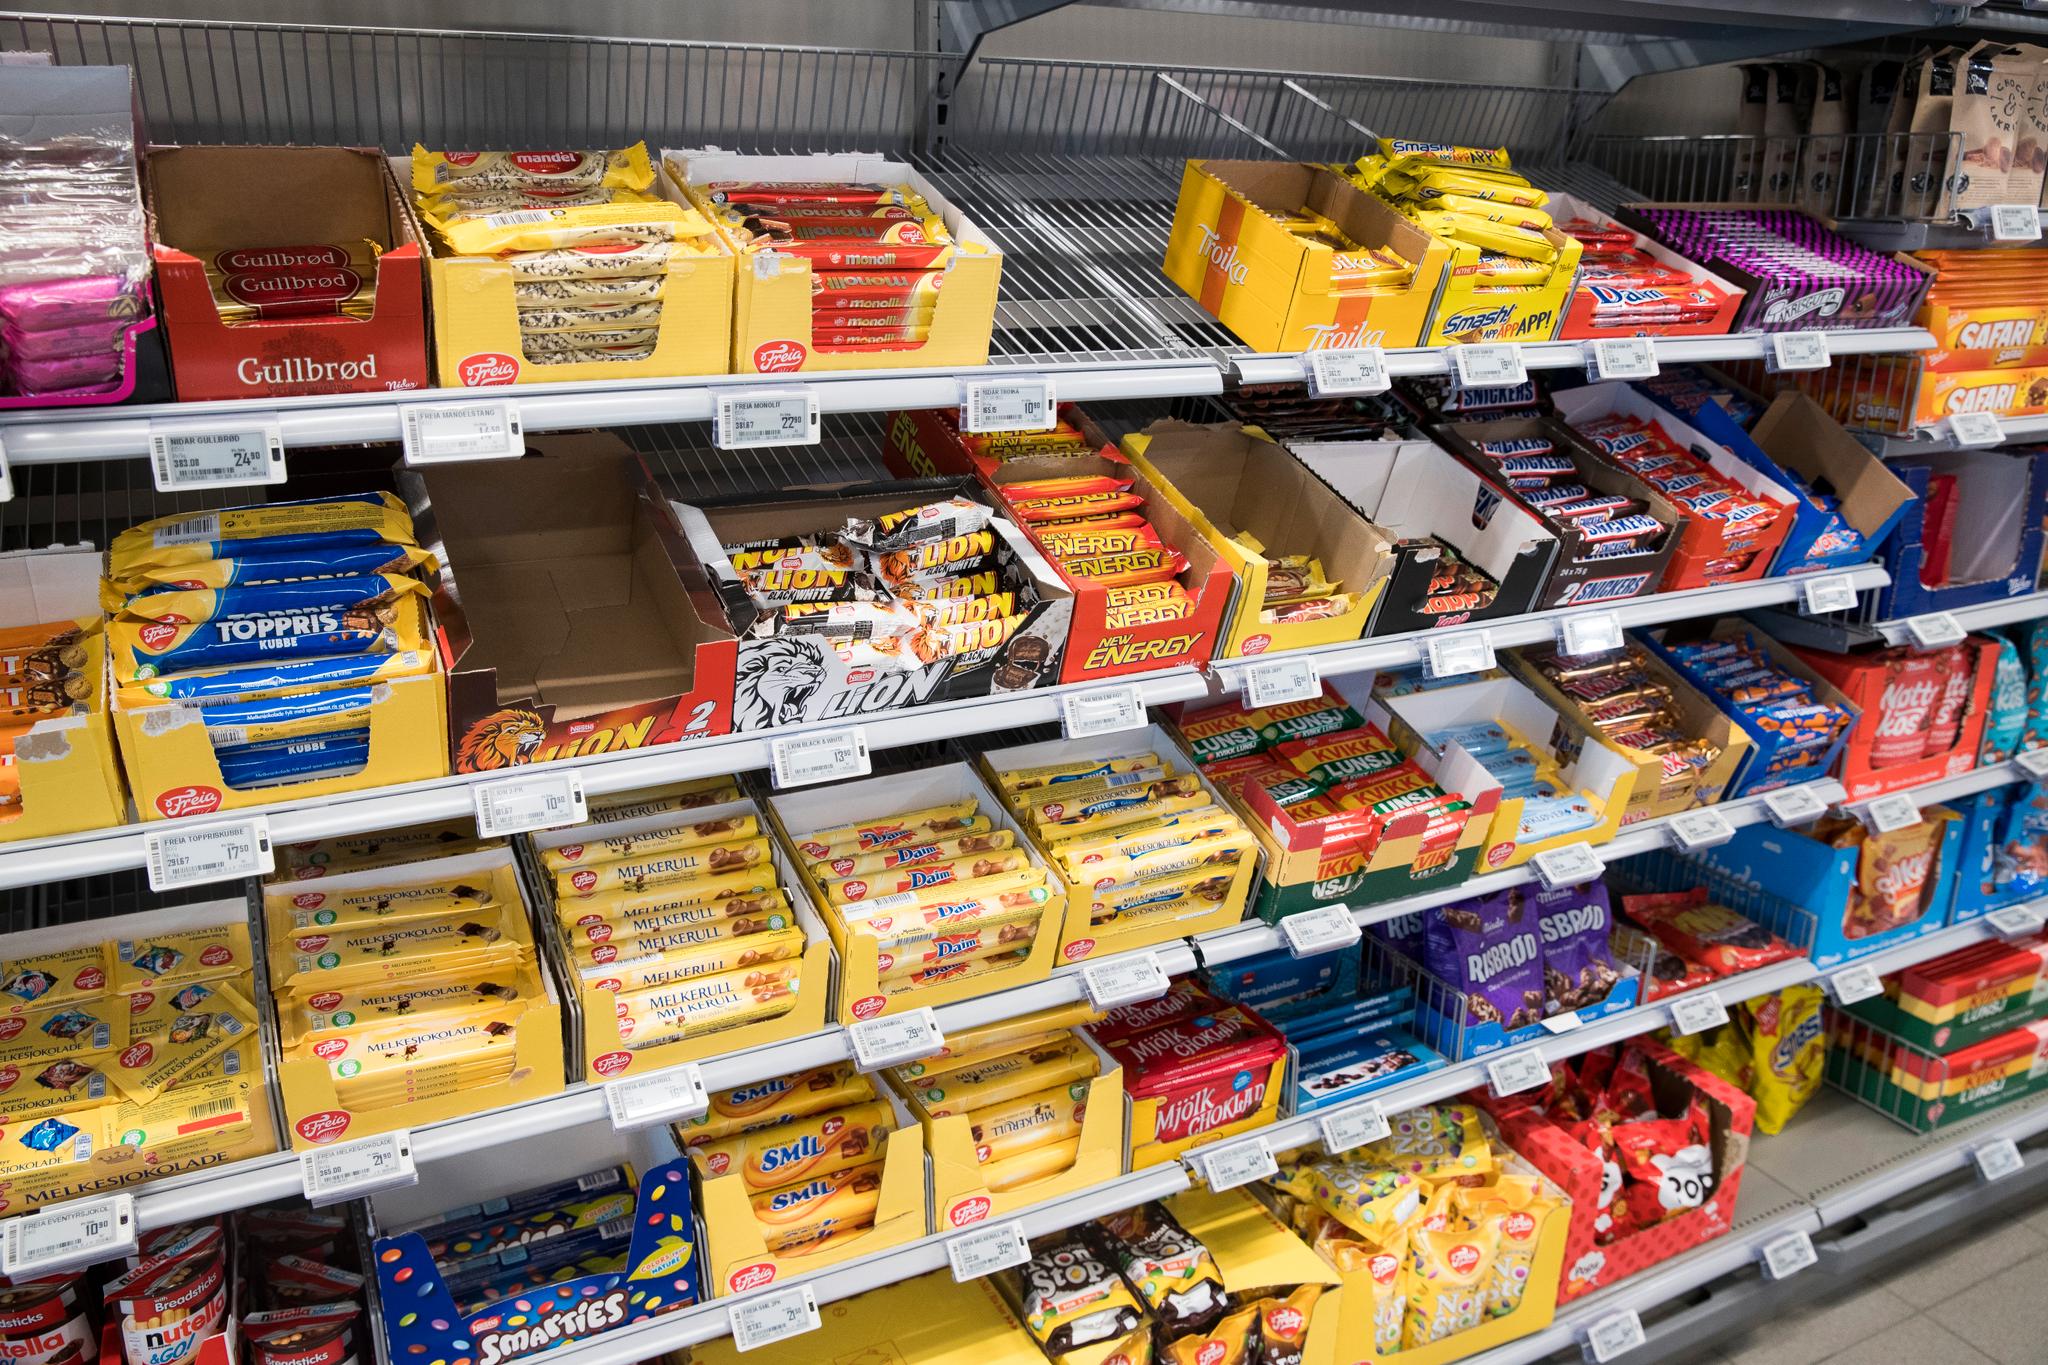 De fleste dagligvarebutikker i Norge har hyller som bugner av sjokolade og andre godterier. I Storbritannia foreslås det å fjerne søtsaker i nærheten av kassene.